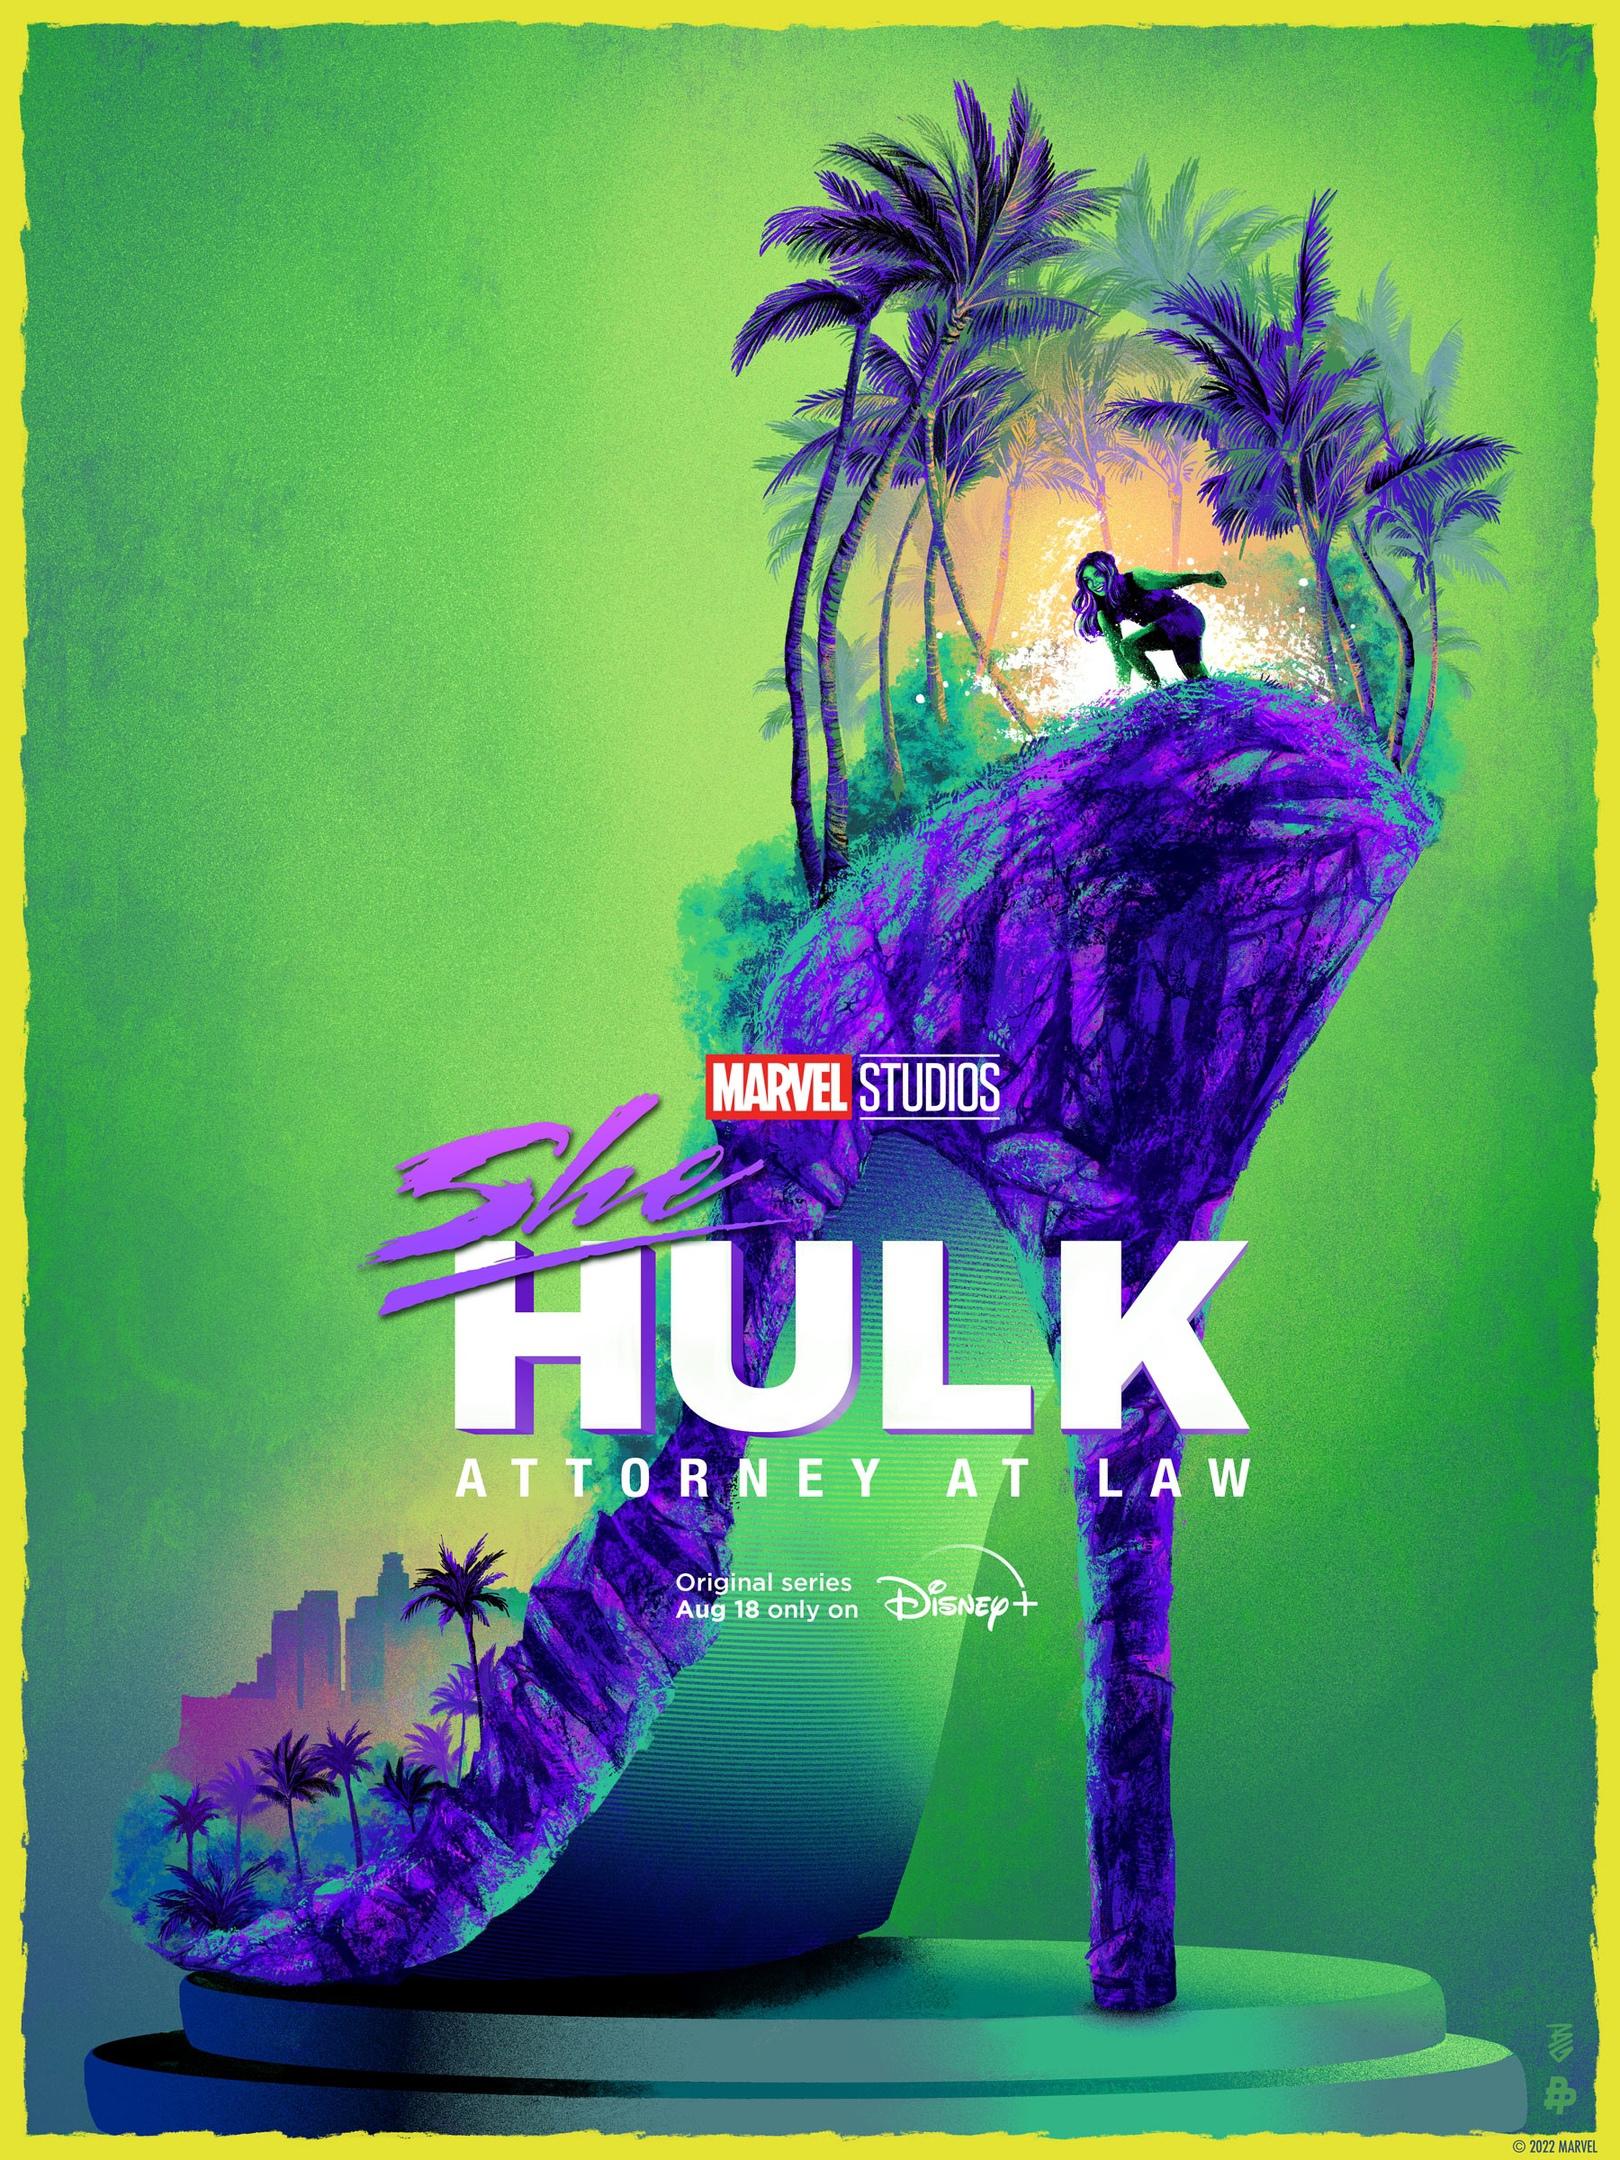 Постер фильма Женщина-Халк | She-Hulk: Attorney at Law